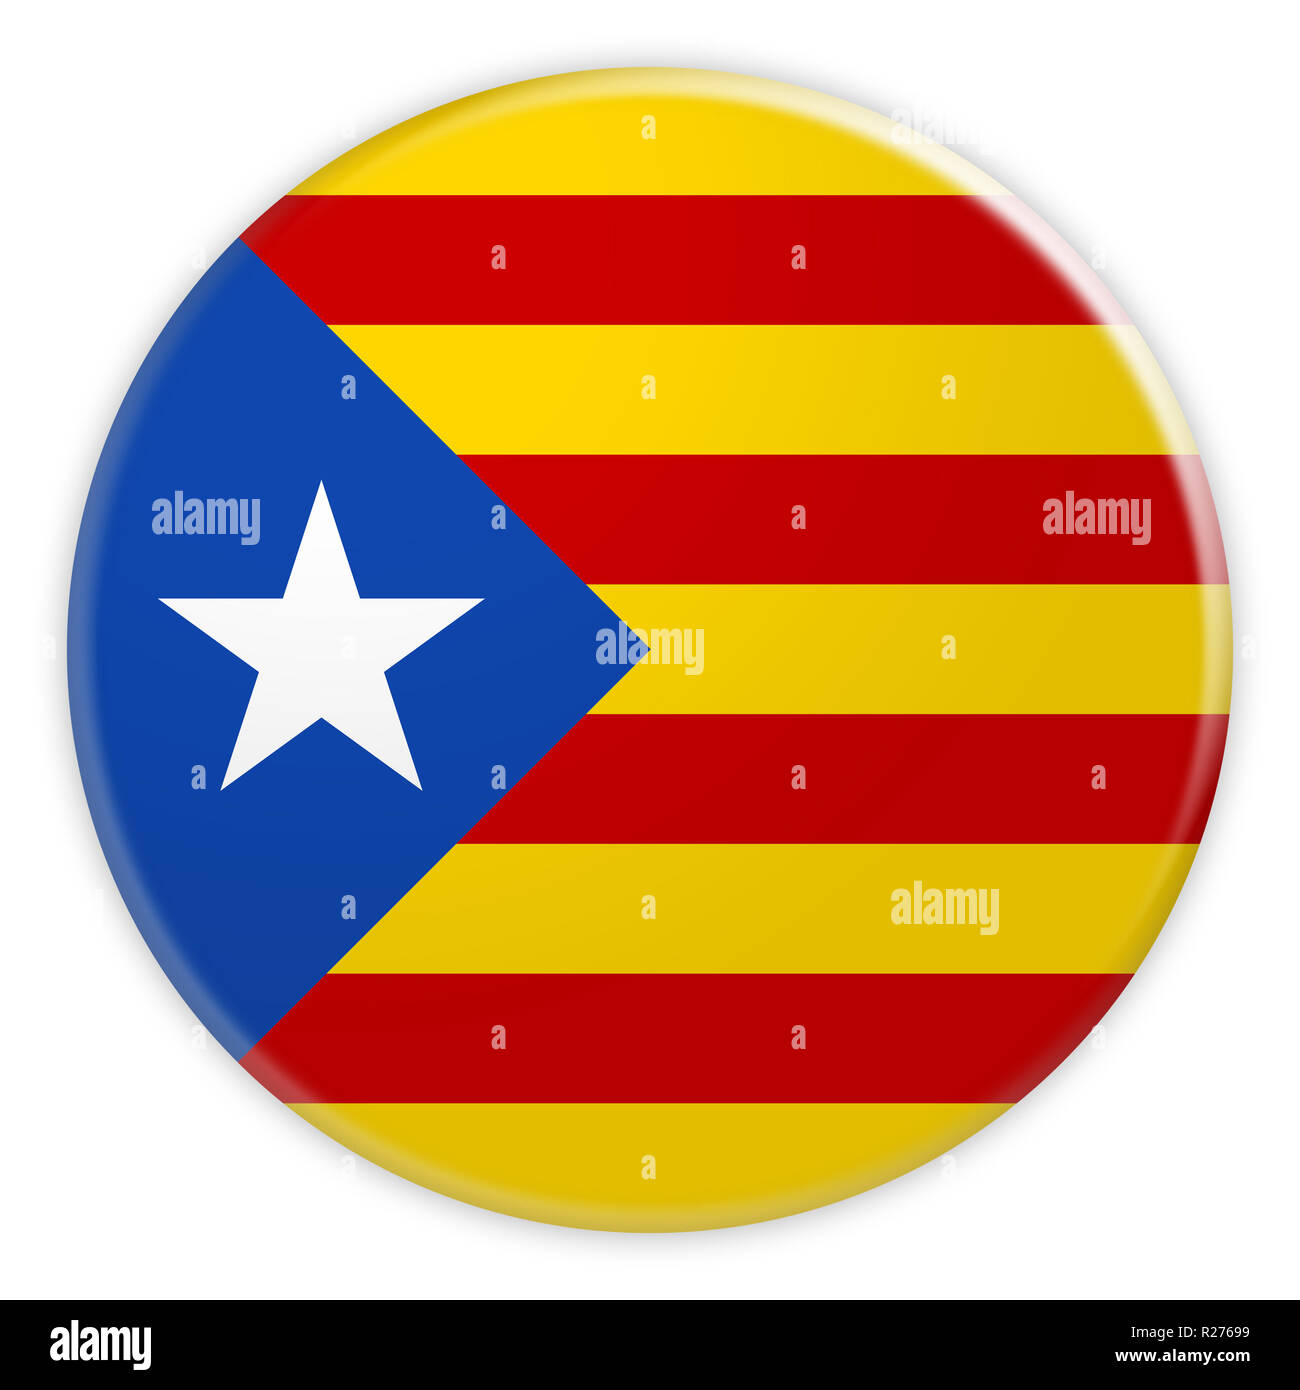 Estelada Blava le séparatisme Catalan Bouton Drapeau, Catalogne Indépendance Actualités Concept d'un insigne, 3d illustration sur fond blanc Banque D'Images